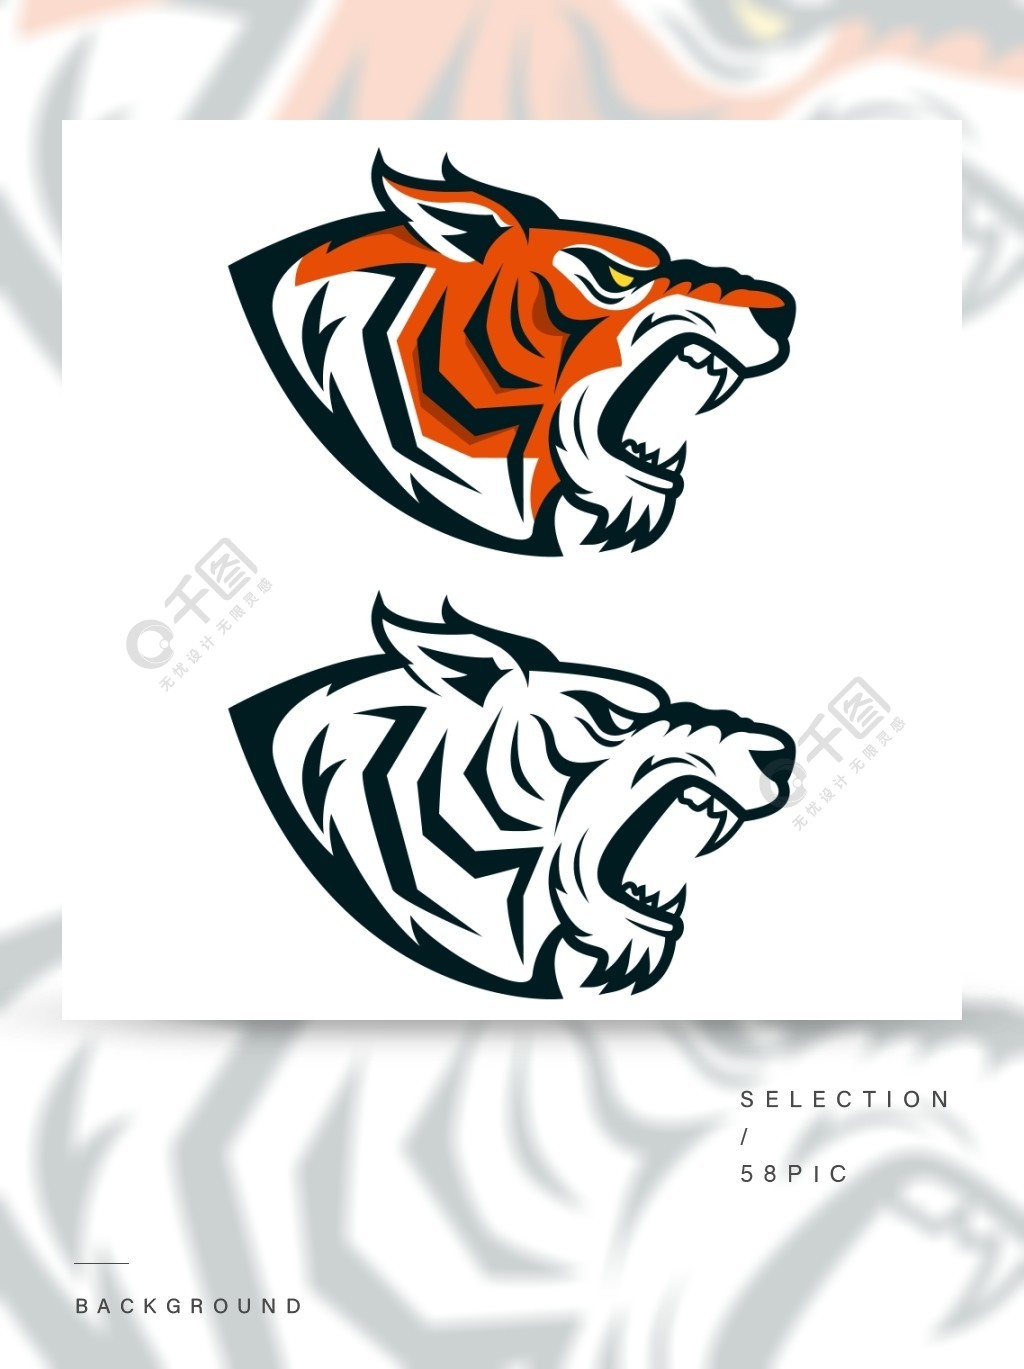 老虎吉祥物在白色背景隔绝的恼怒的老虎头徽标,标签,标志,标志的设计